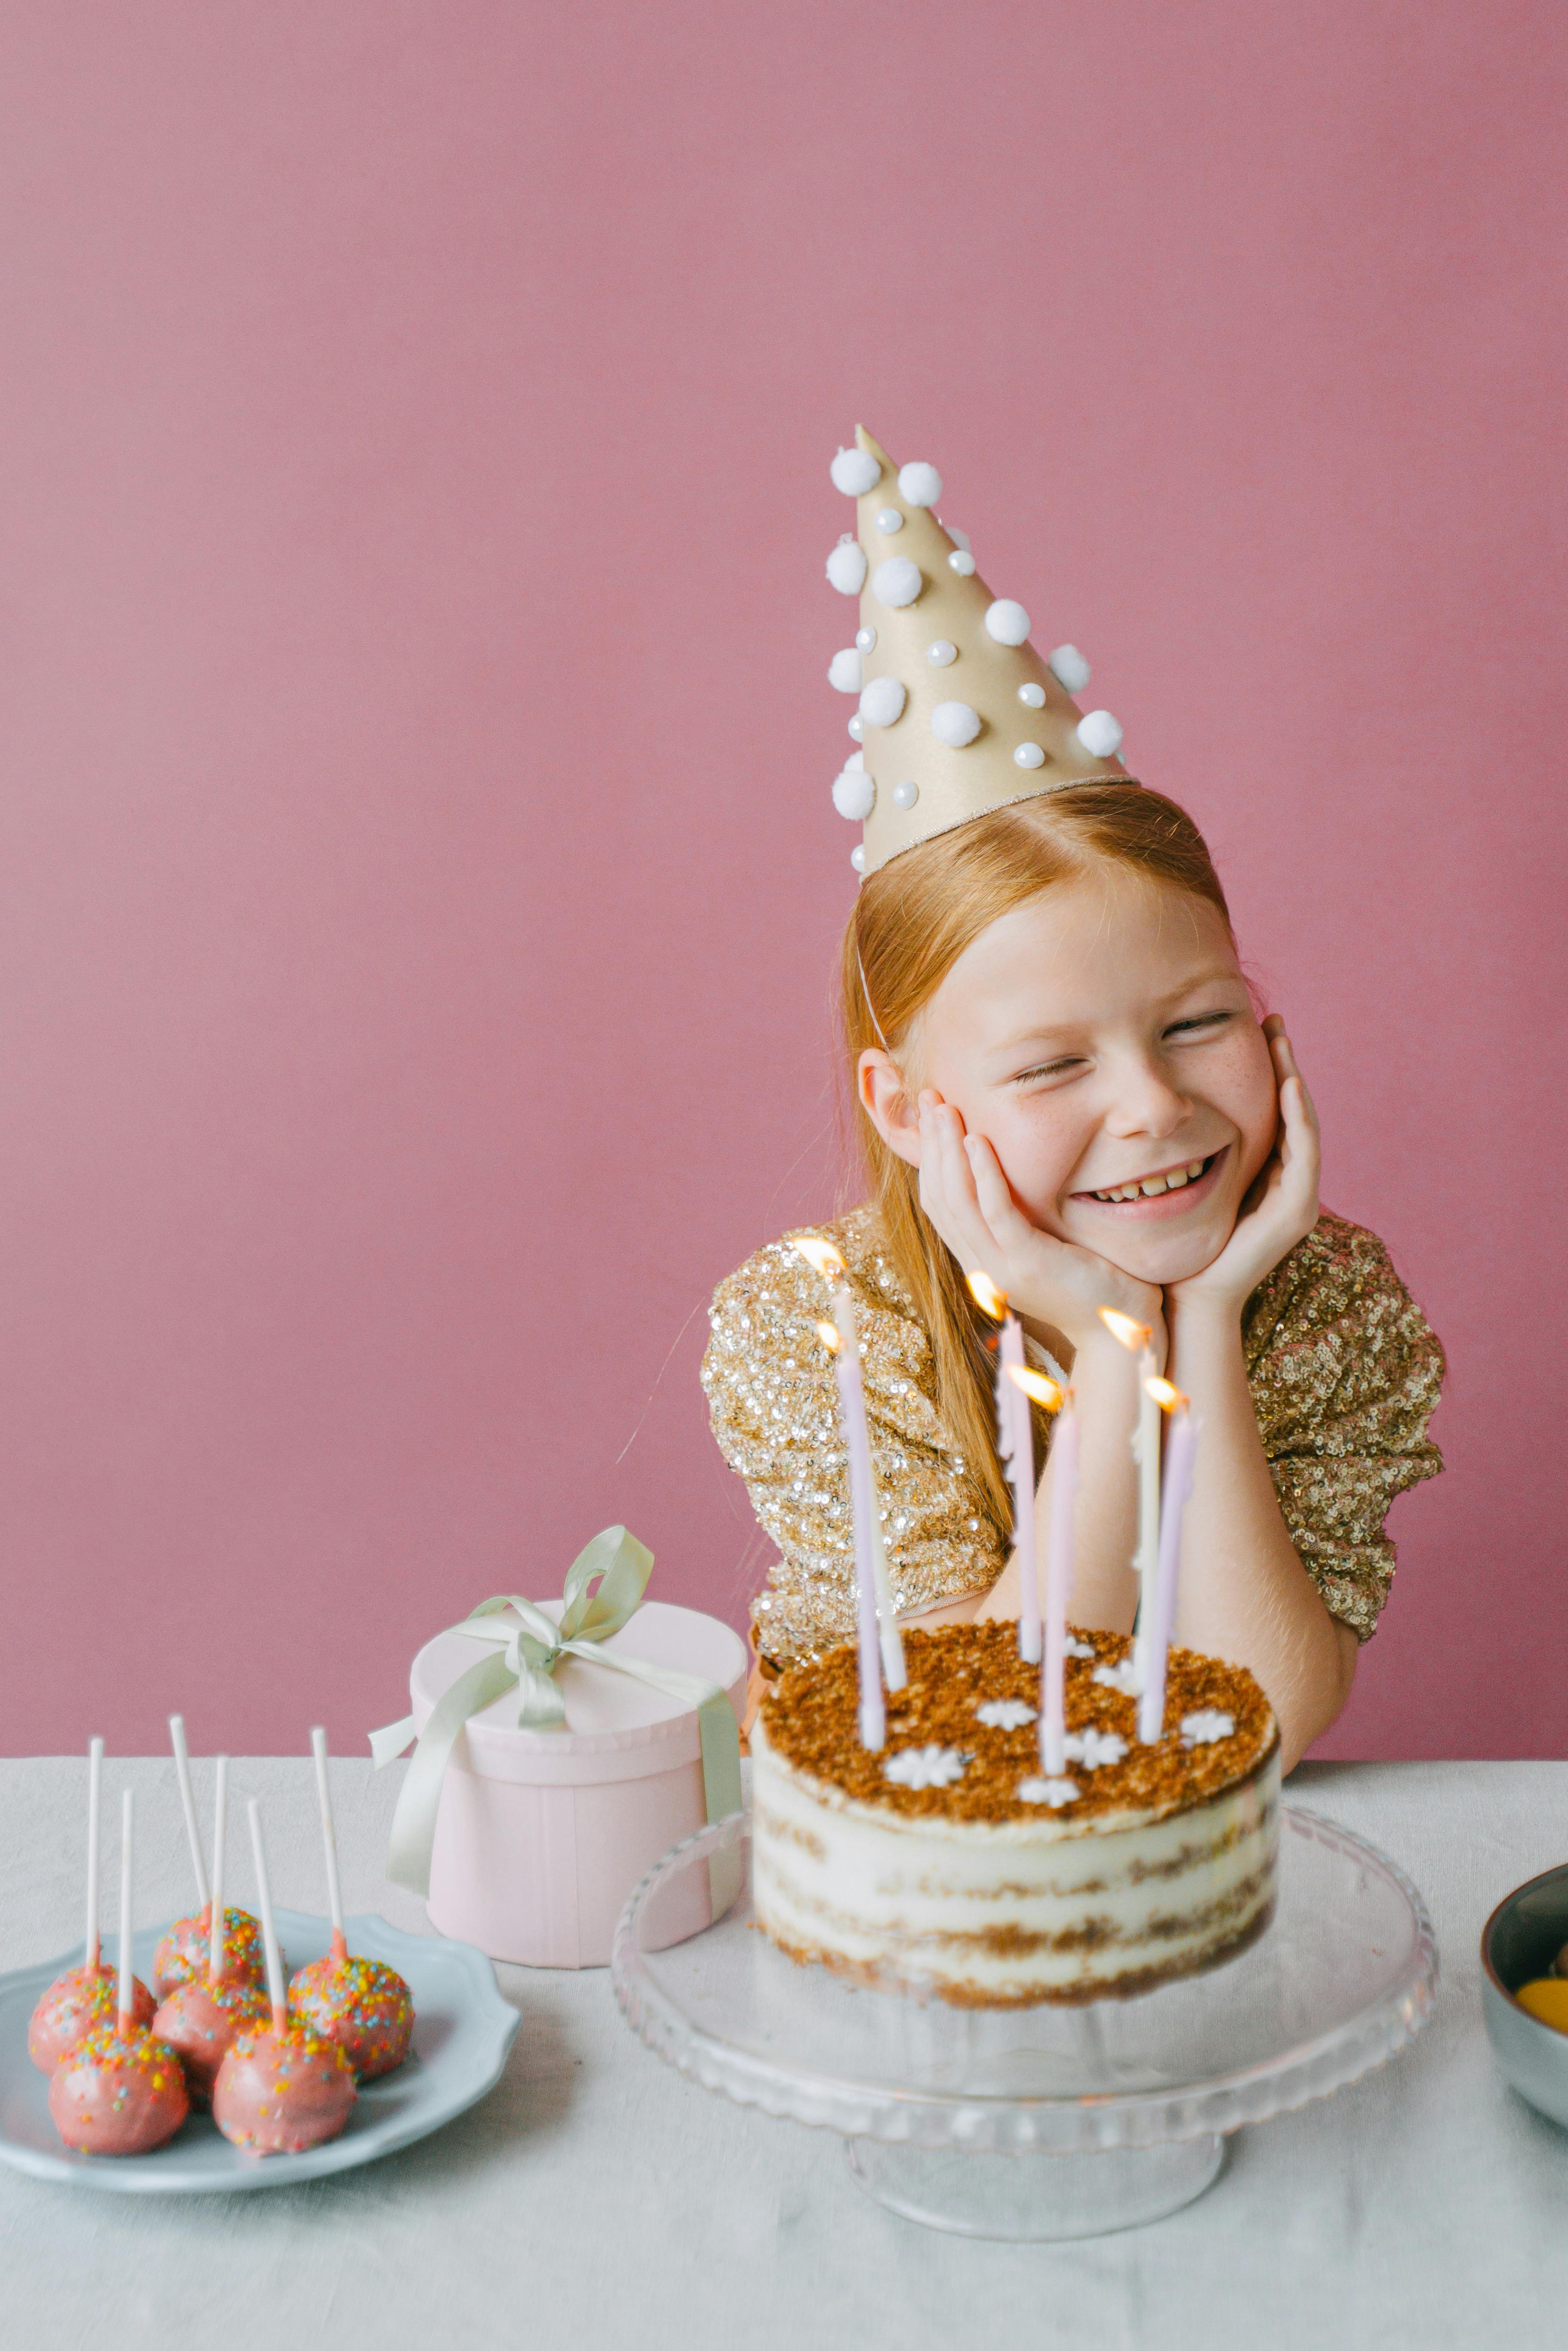 Ein kleines Mädchen, das seinen Geburtstag feiert | Quelle: Pexels